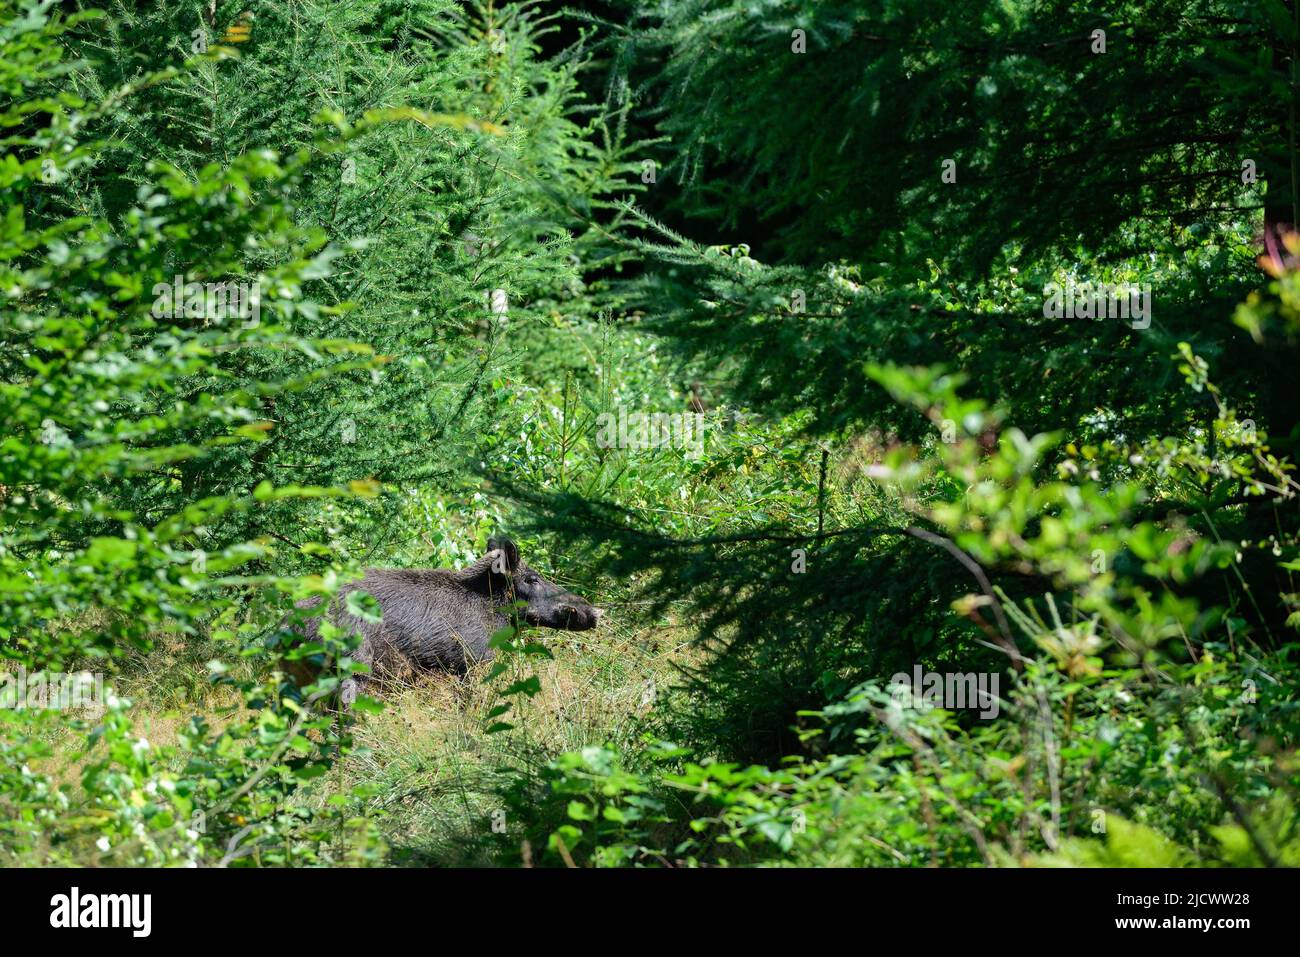 Cinghiale femmina in piedi nascosto nella foresta, estate, bassa sassonia, (sus scrofa), germania Foto Stock